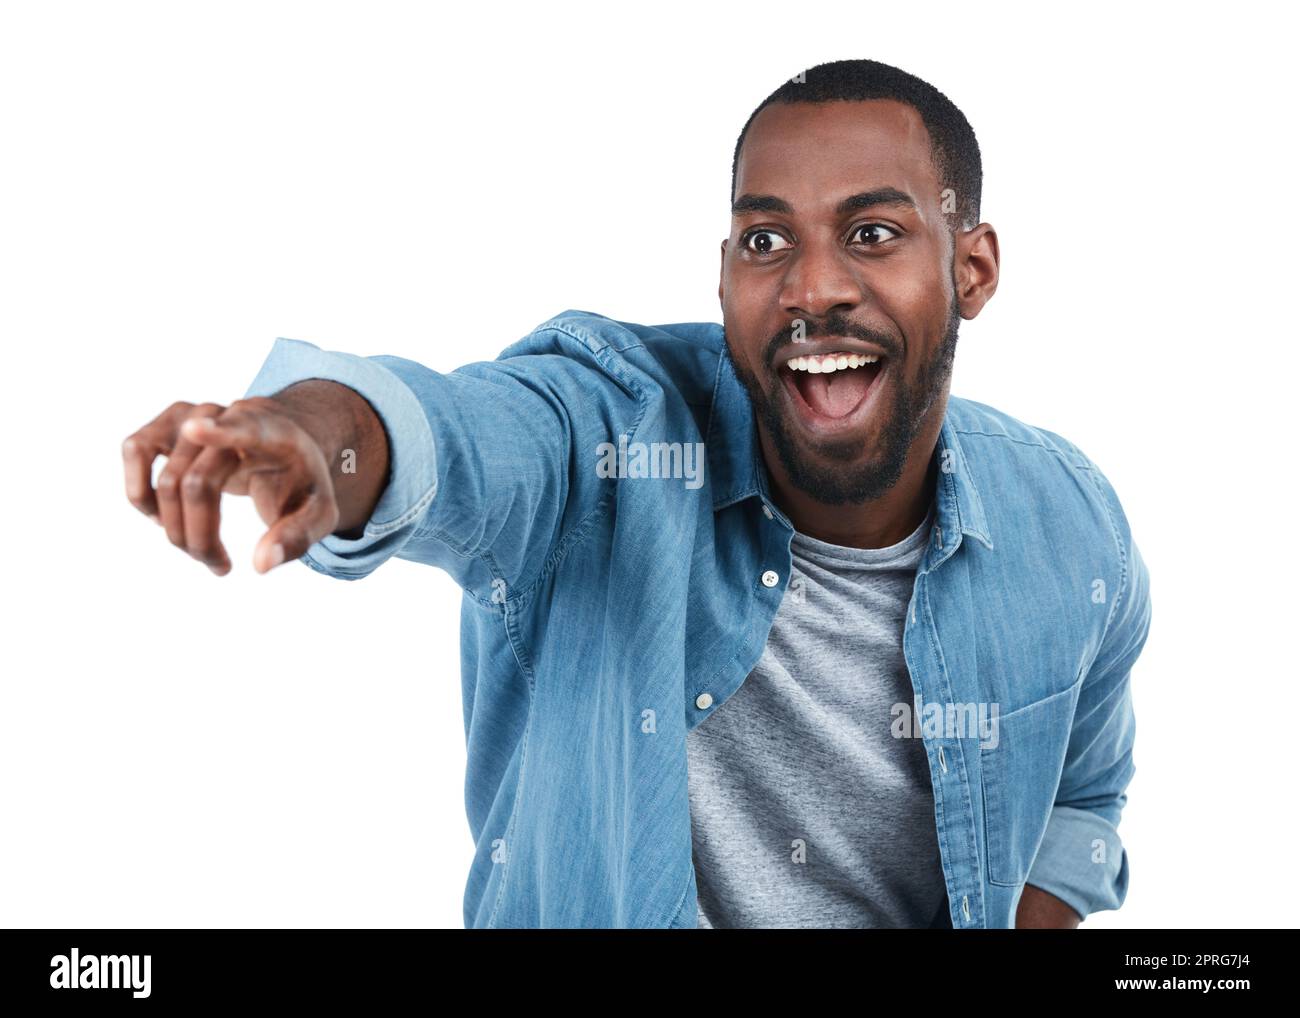 Oh mein Wort. Ein junger Mann zeigt aufgeregt auf etwas vor weißem Hintergrund. Stockfoto